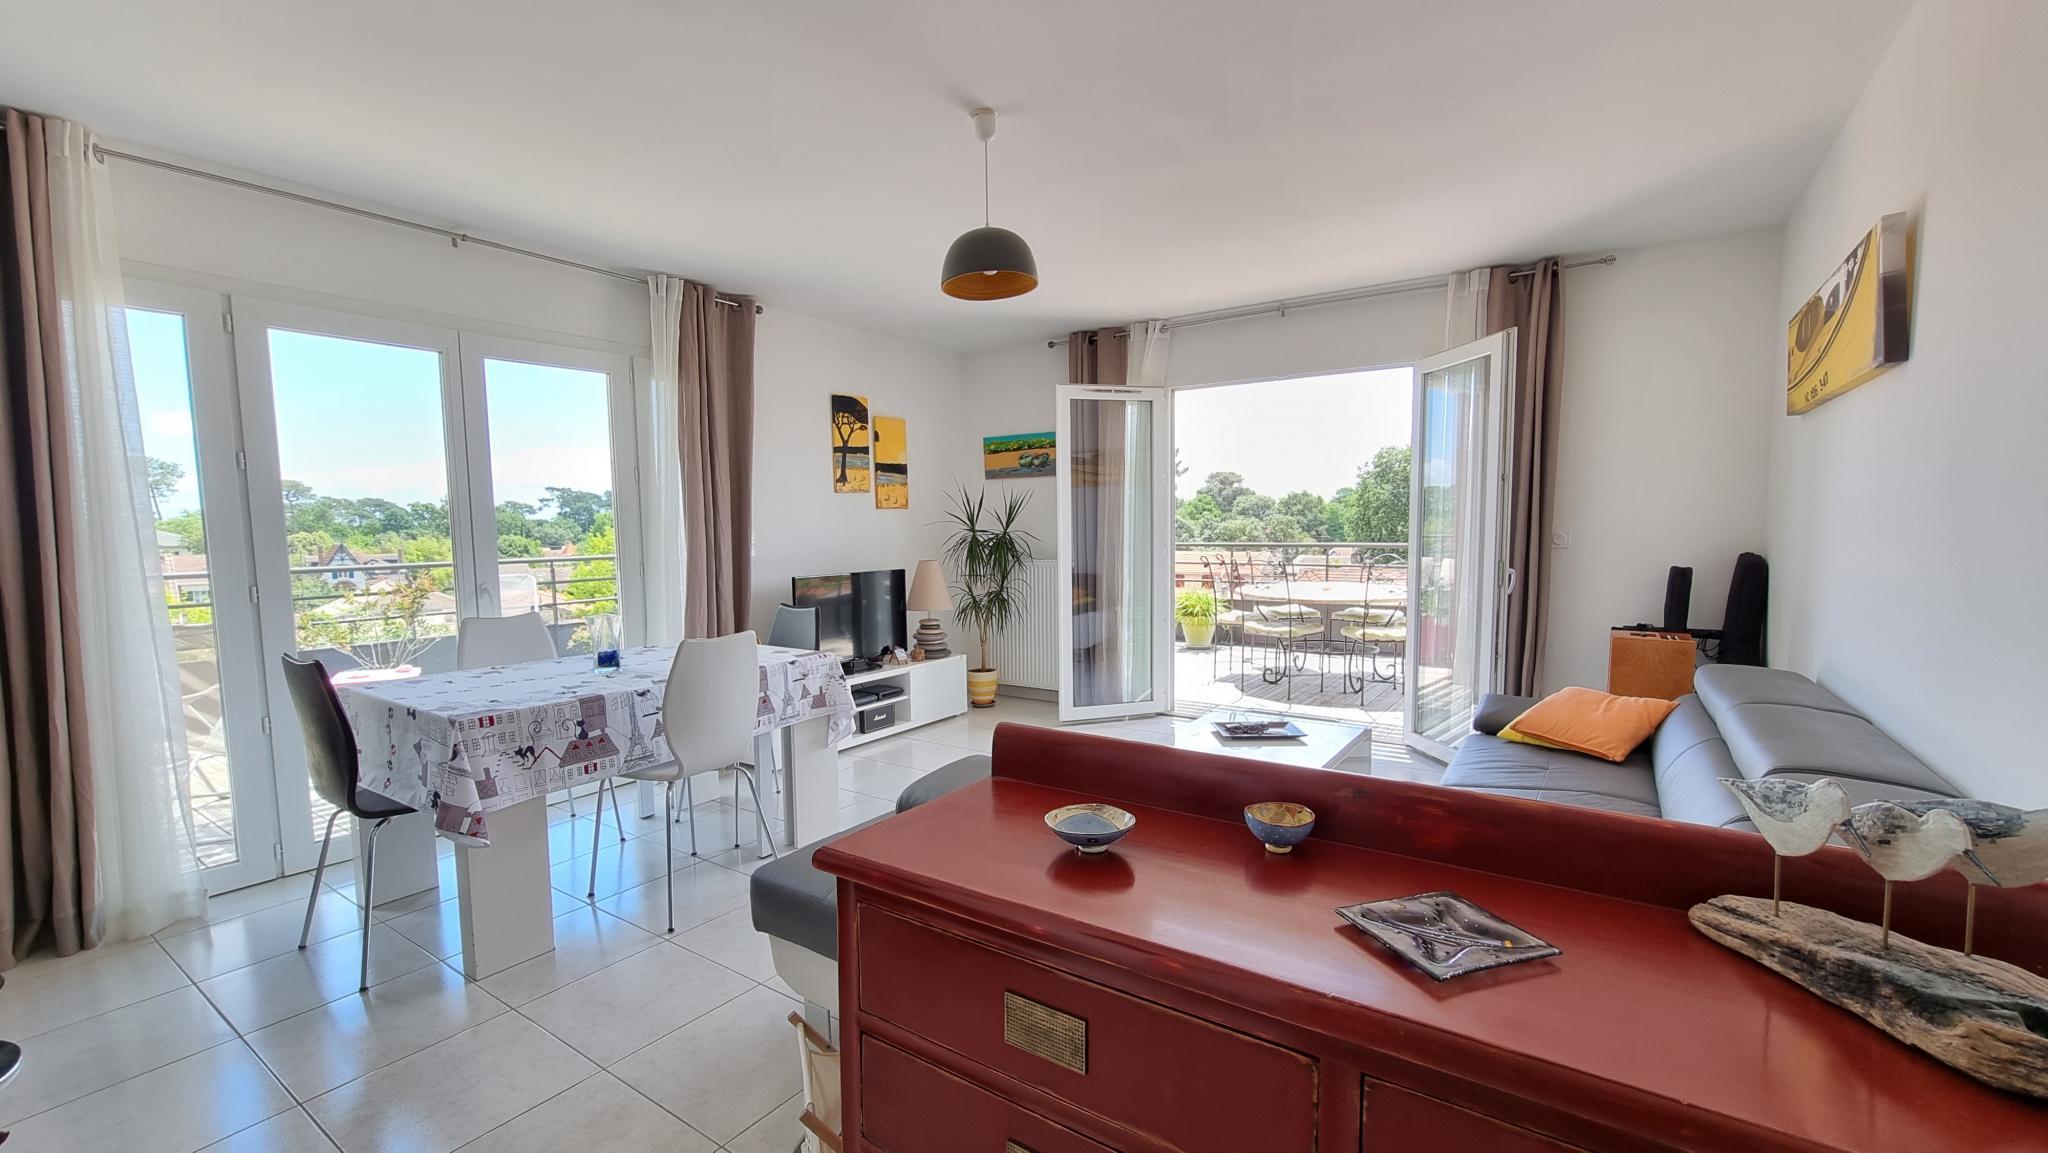 Agence immobilière : Vente appartement 72.80 m² Andernos-les-Bains